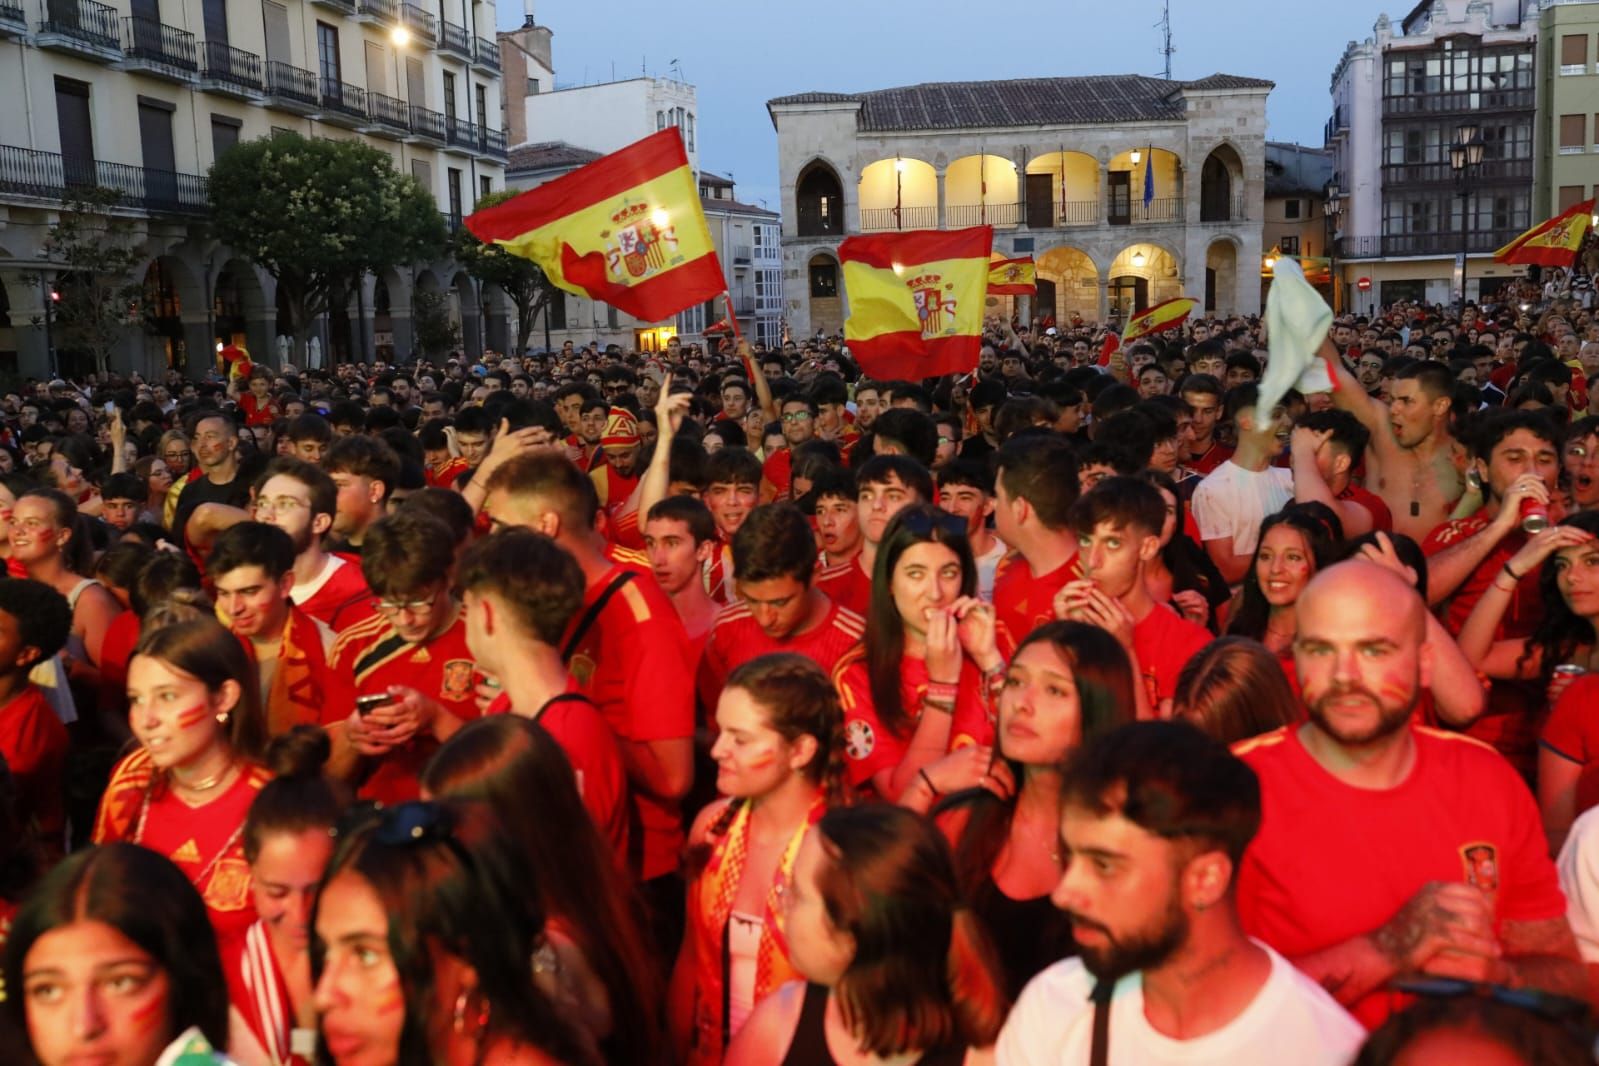 GALERÍA | La afición empuja a la selección española en Zamora